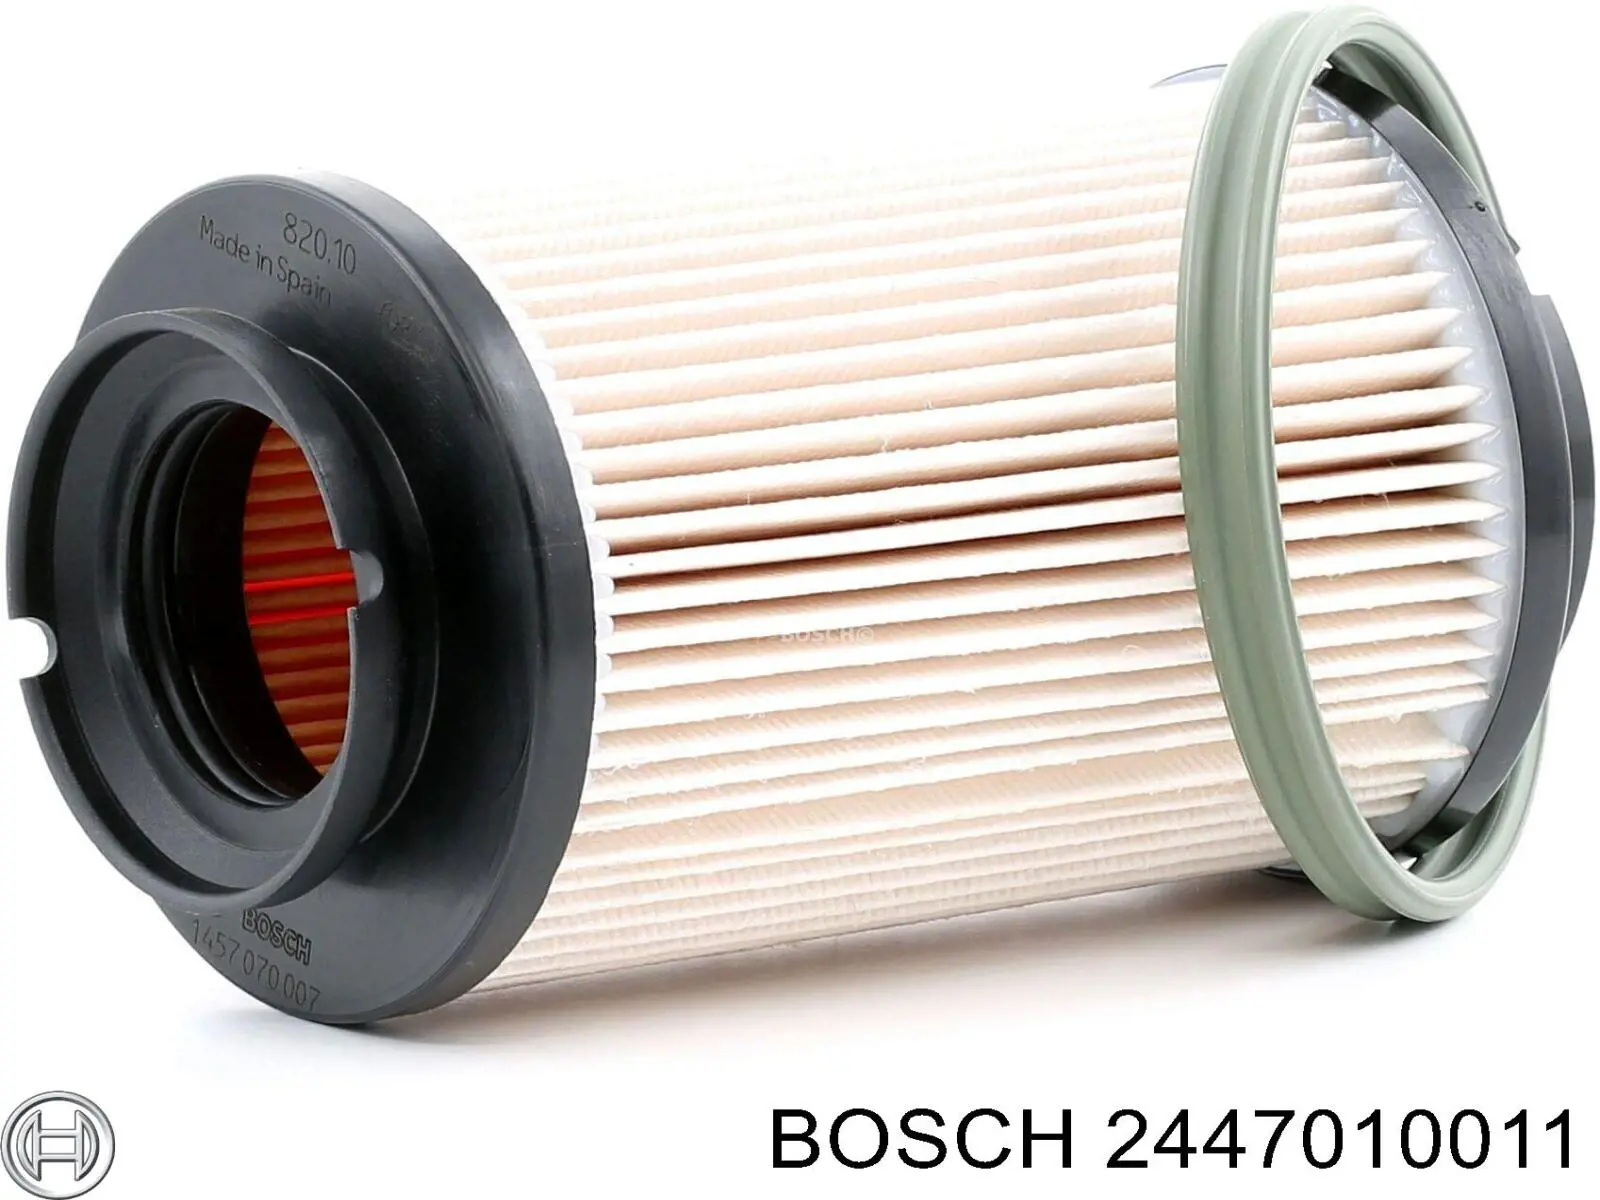 2447010011 Bosch kit de reparação da bomba de combustível de bombeio manual